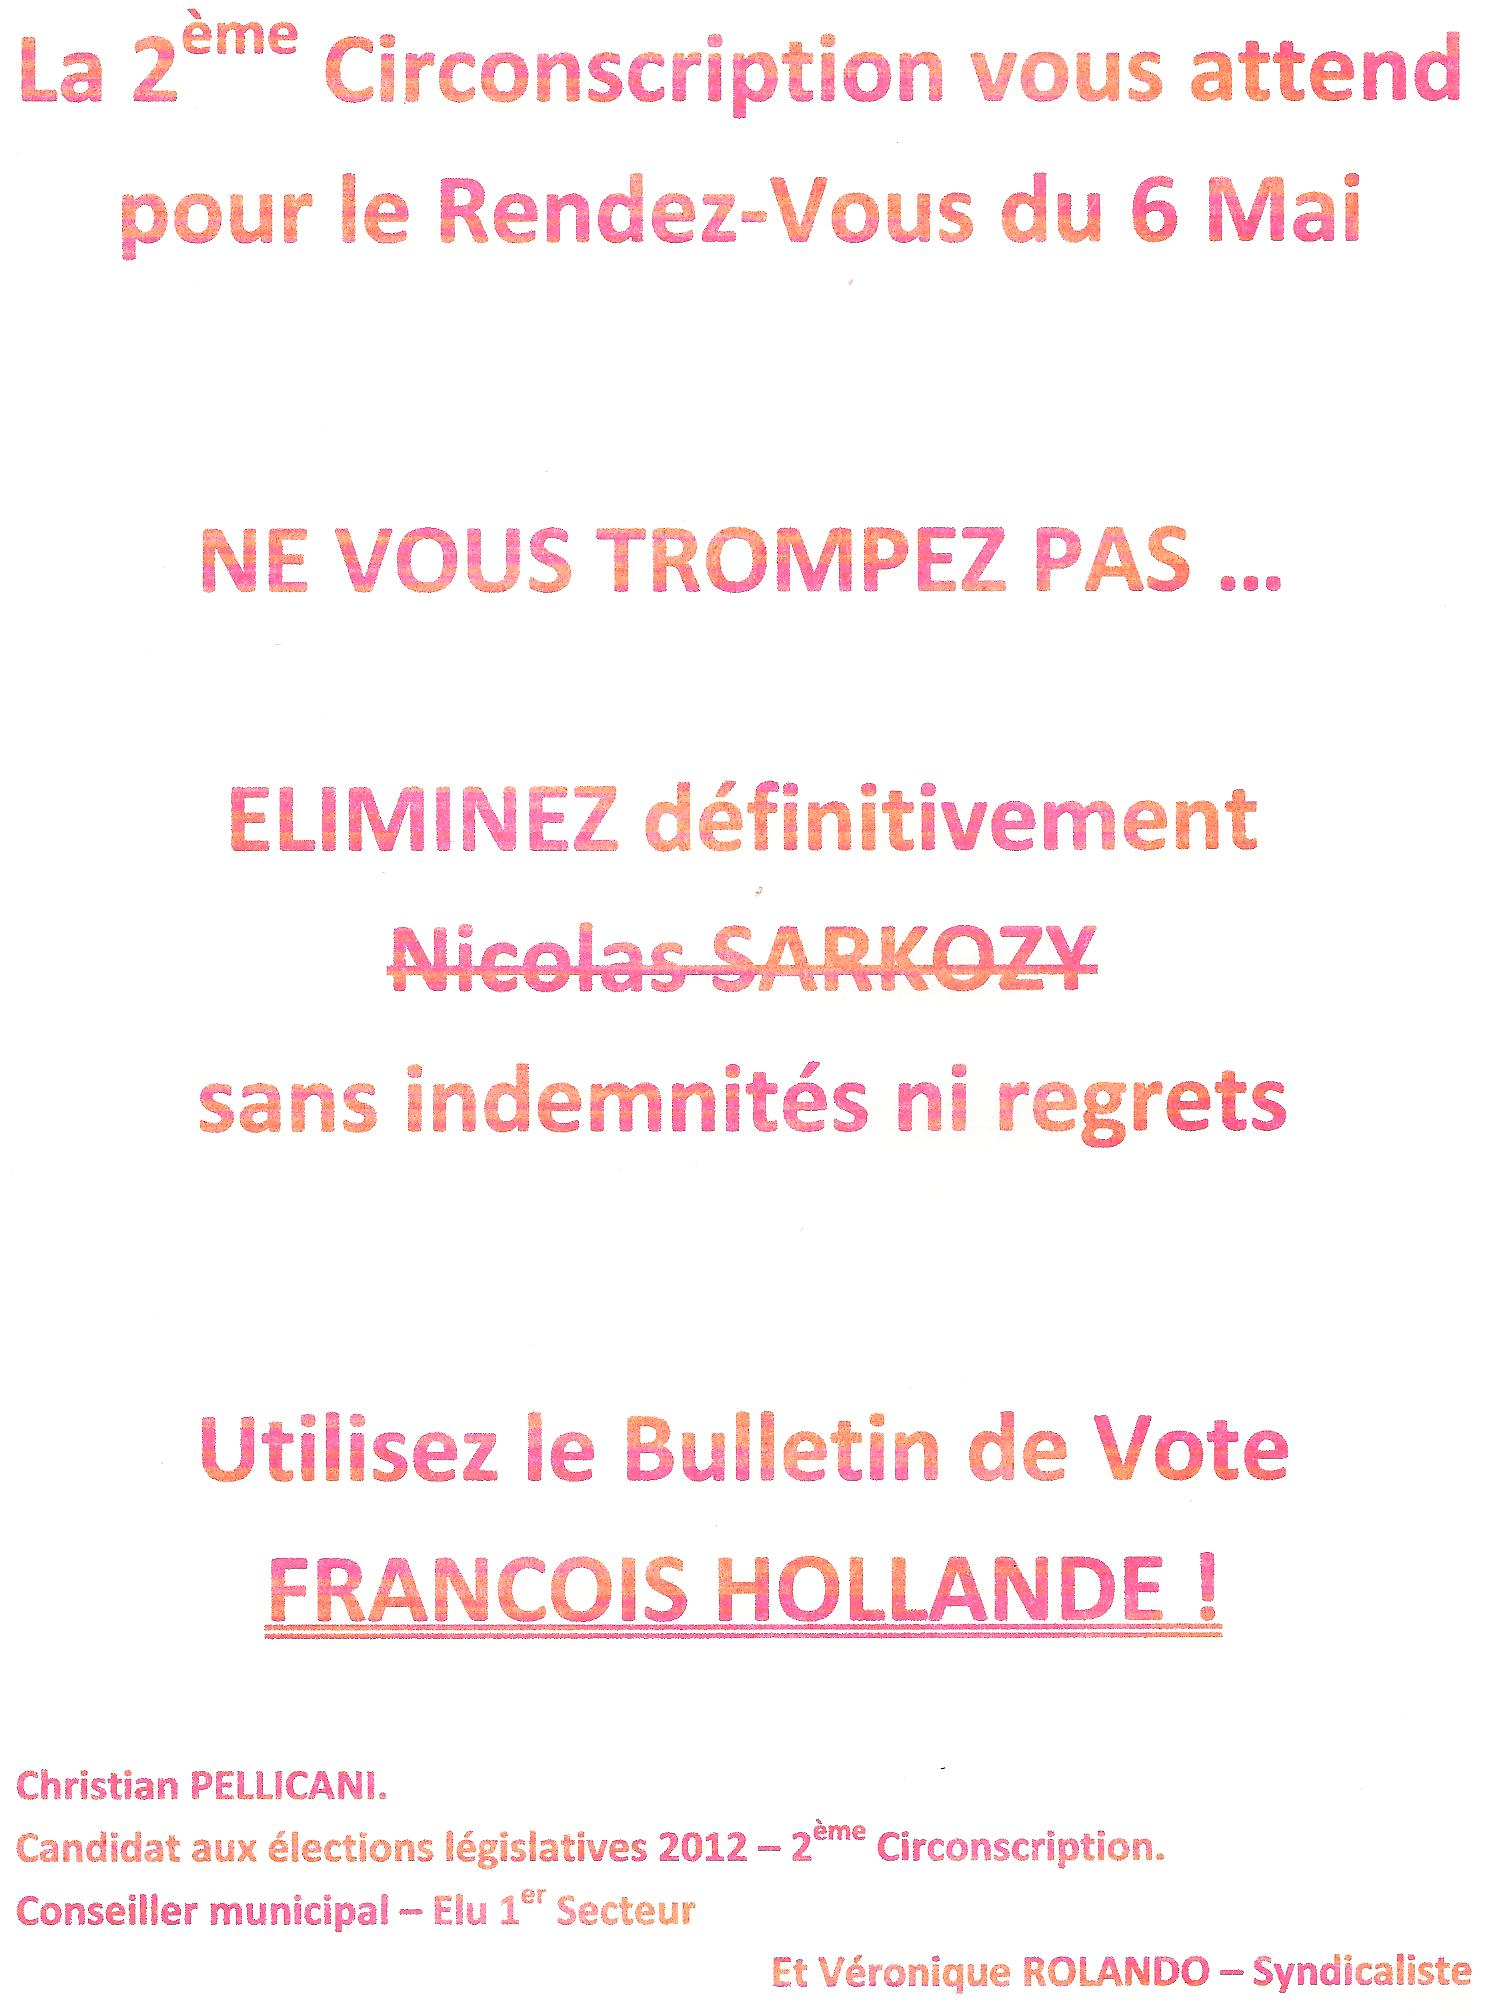 Appel : Le 6 mai, utilisez le bulletin de vote Hollande pour battre Sarkozy !